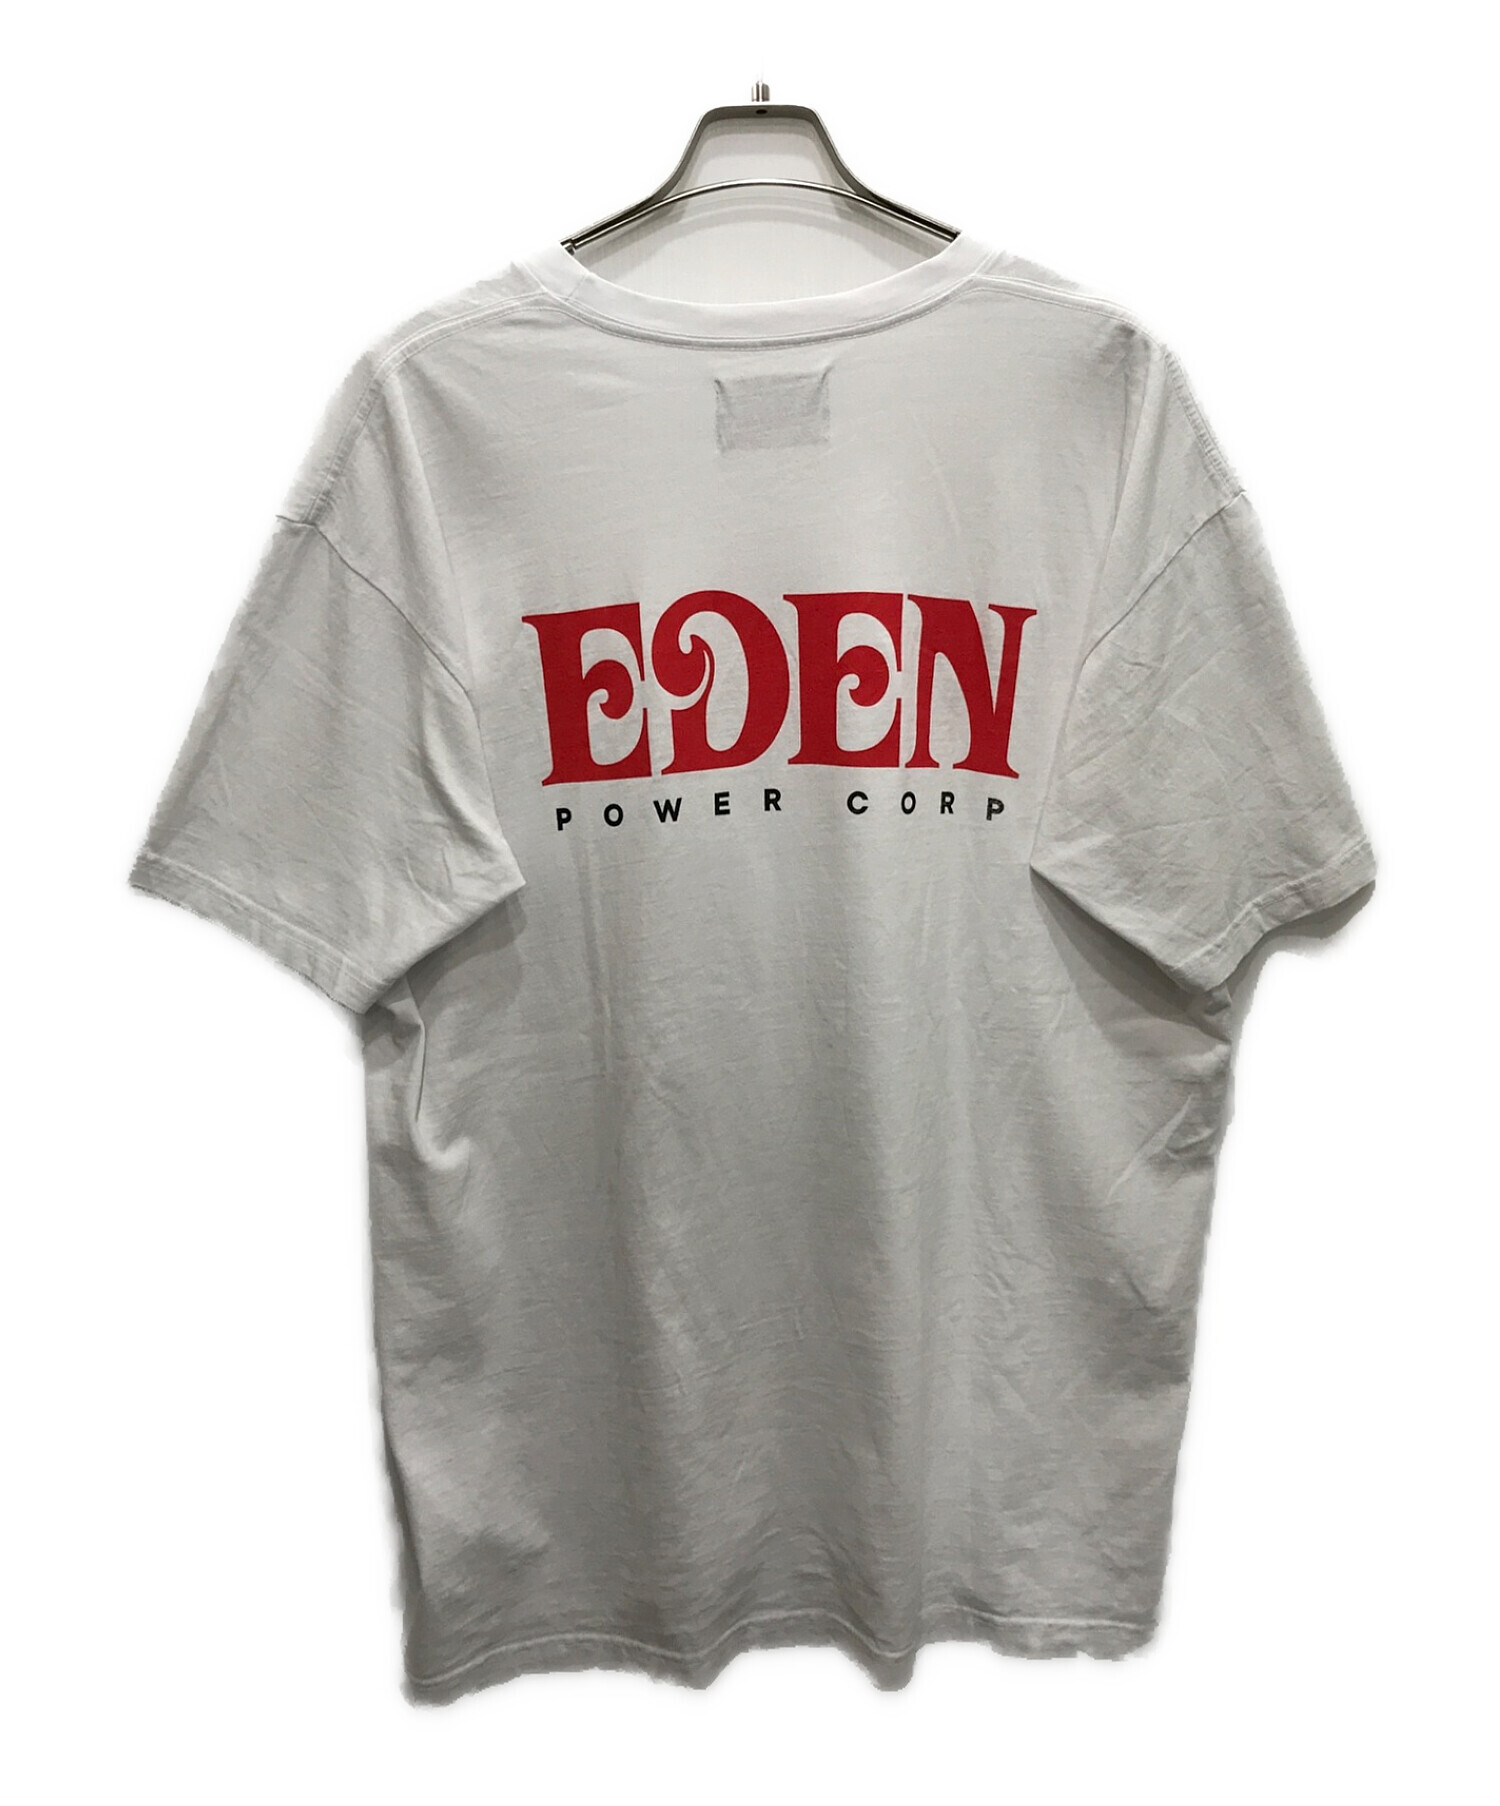 中古・古着通販】EDEN POWER CORP (エデンパワーコープ) Logo Tee